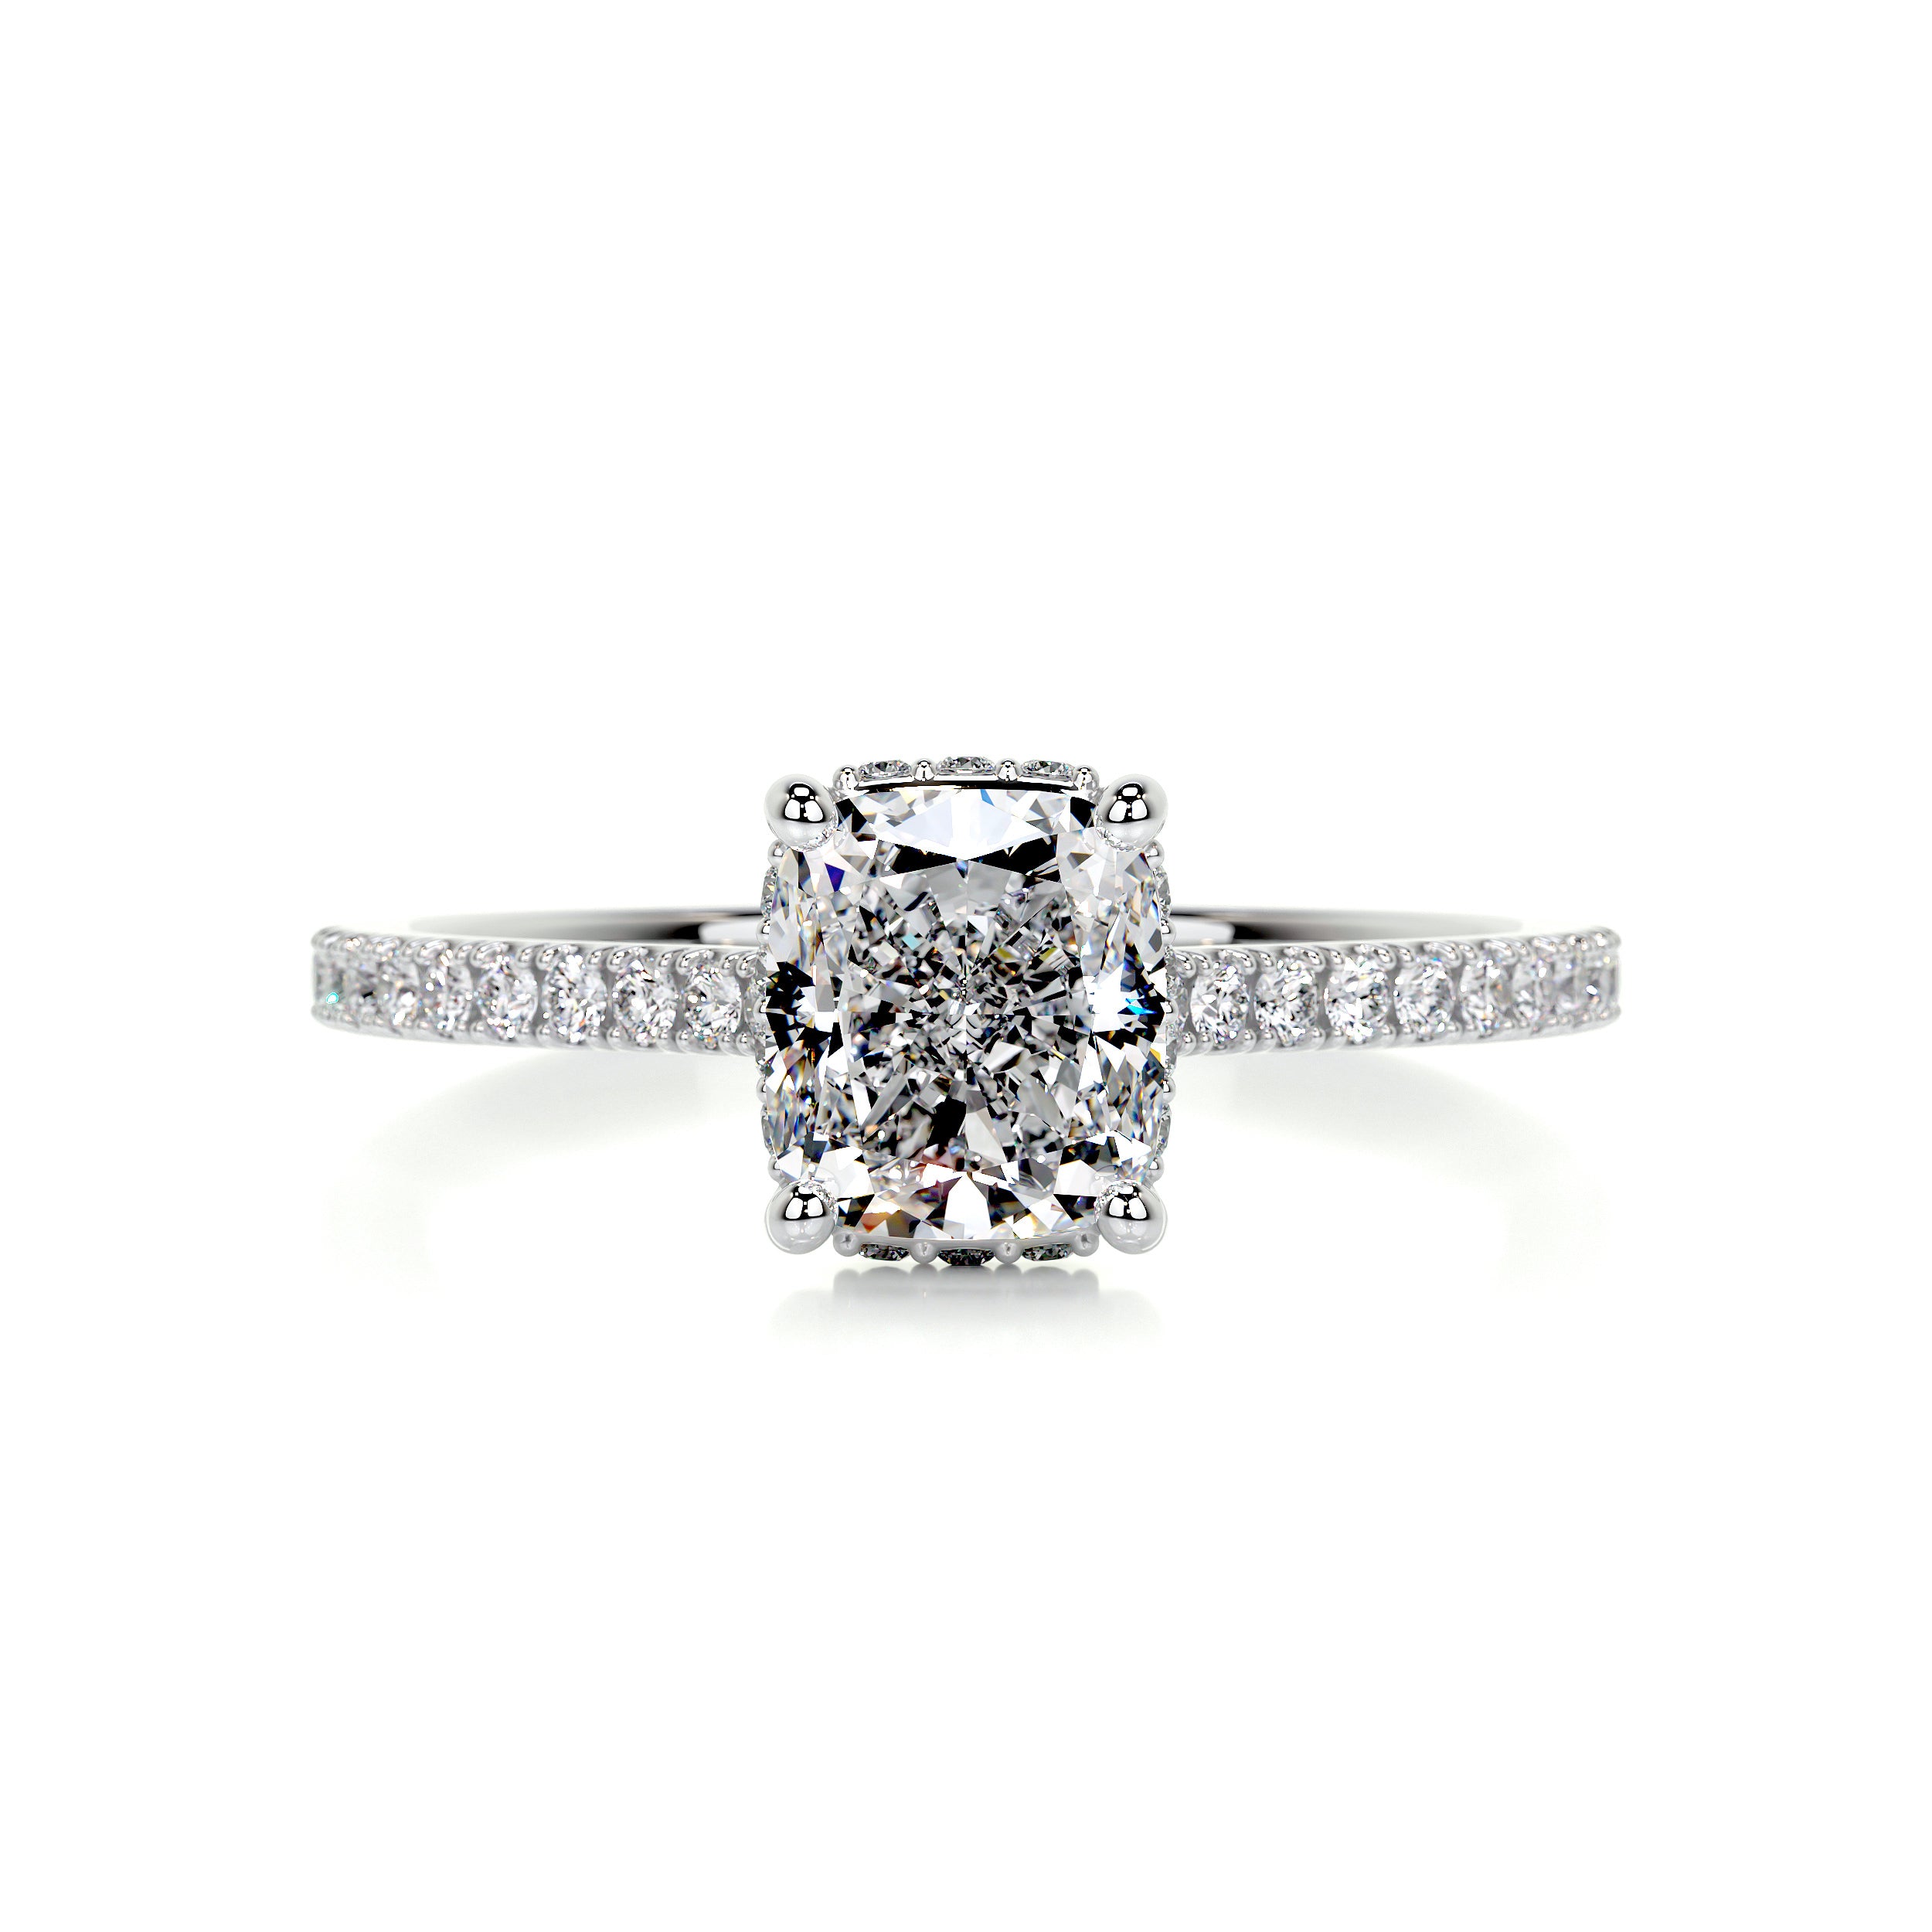 Deandra Diamond Engagement Ring   (1.75 Carat) -Platinum